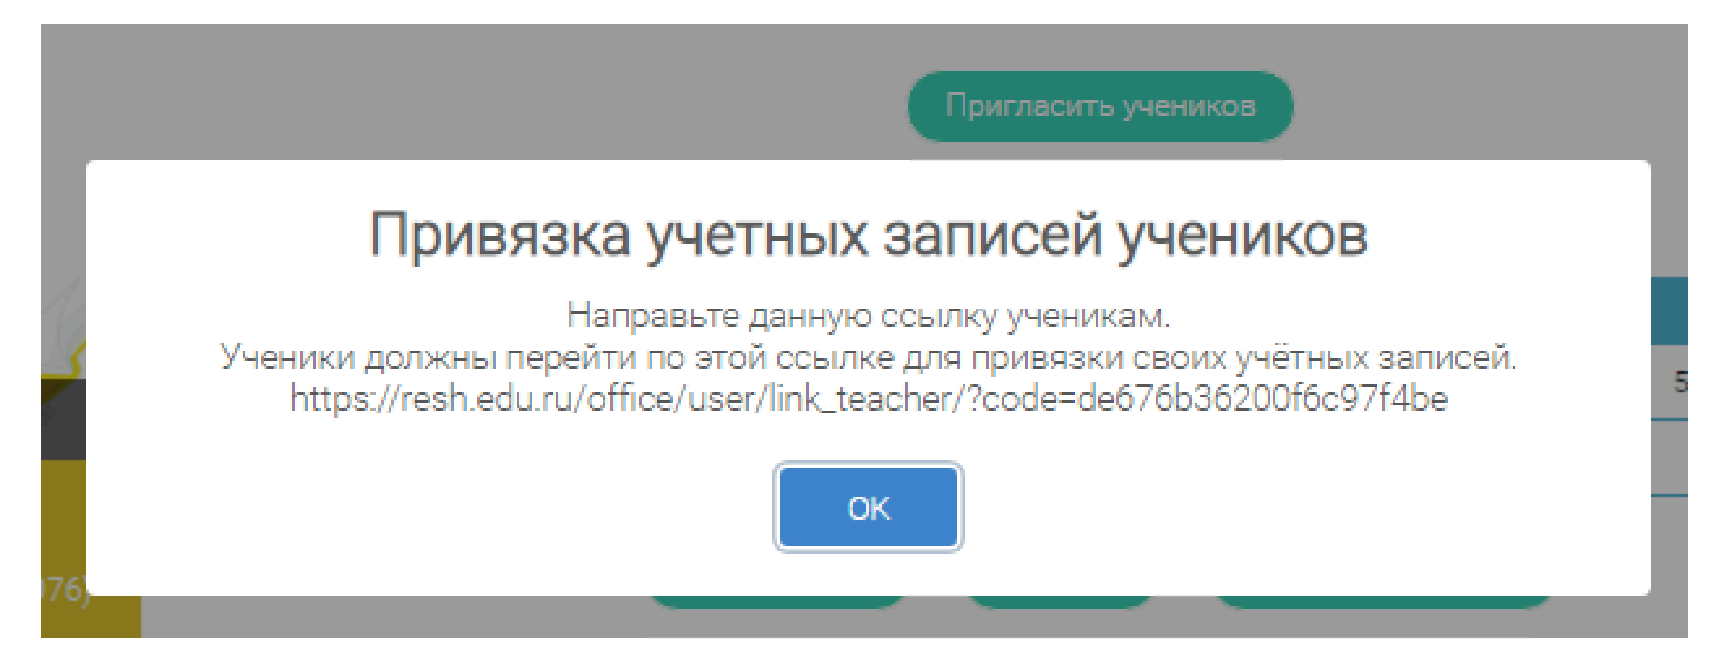 Новая российская электронная школа